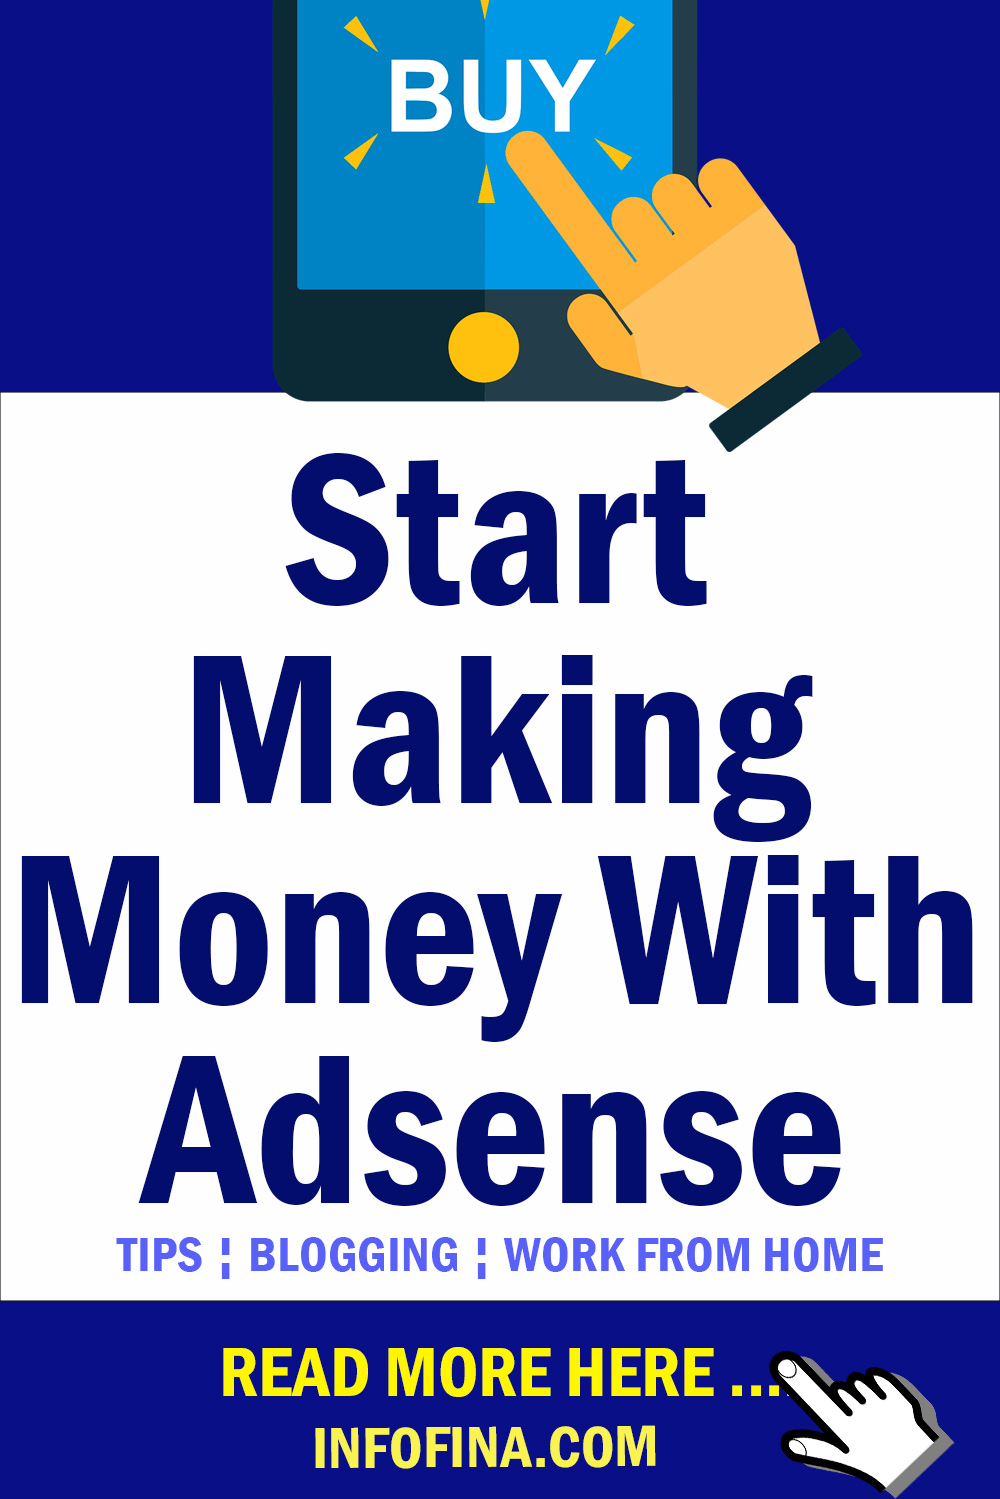 Start-Making-Money-With-Adsense / Canva